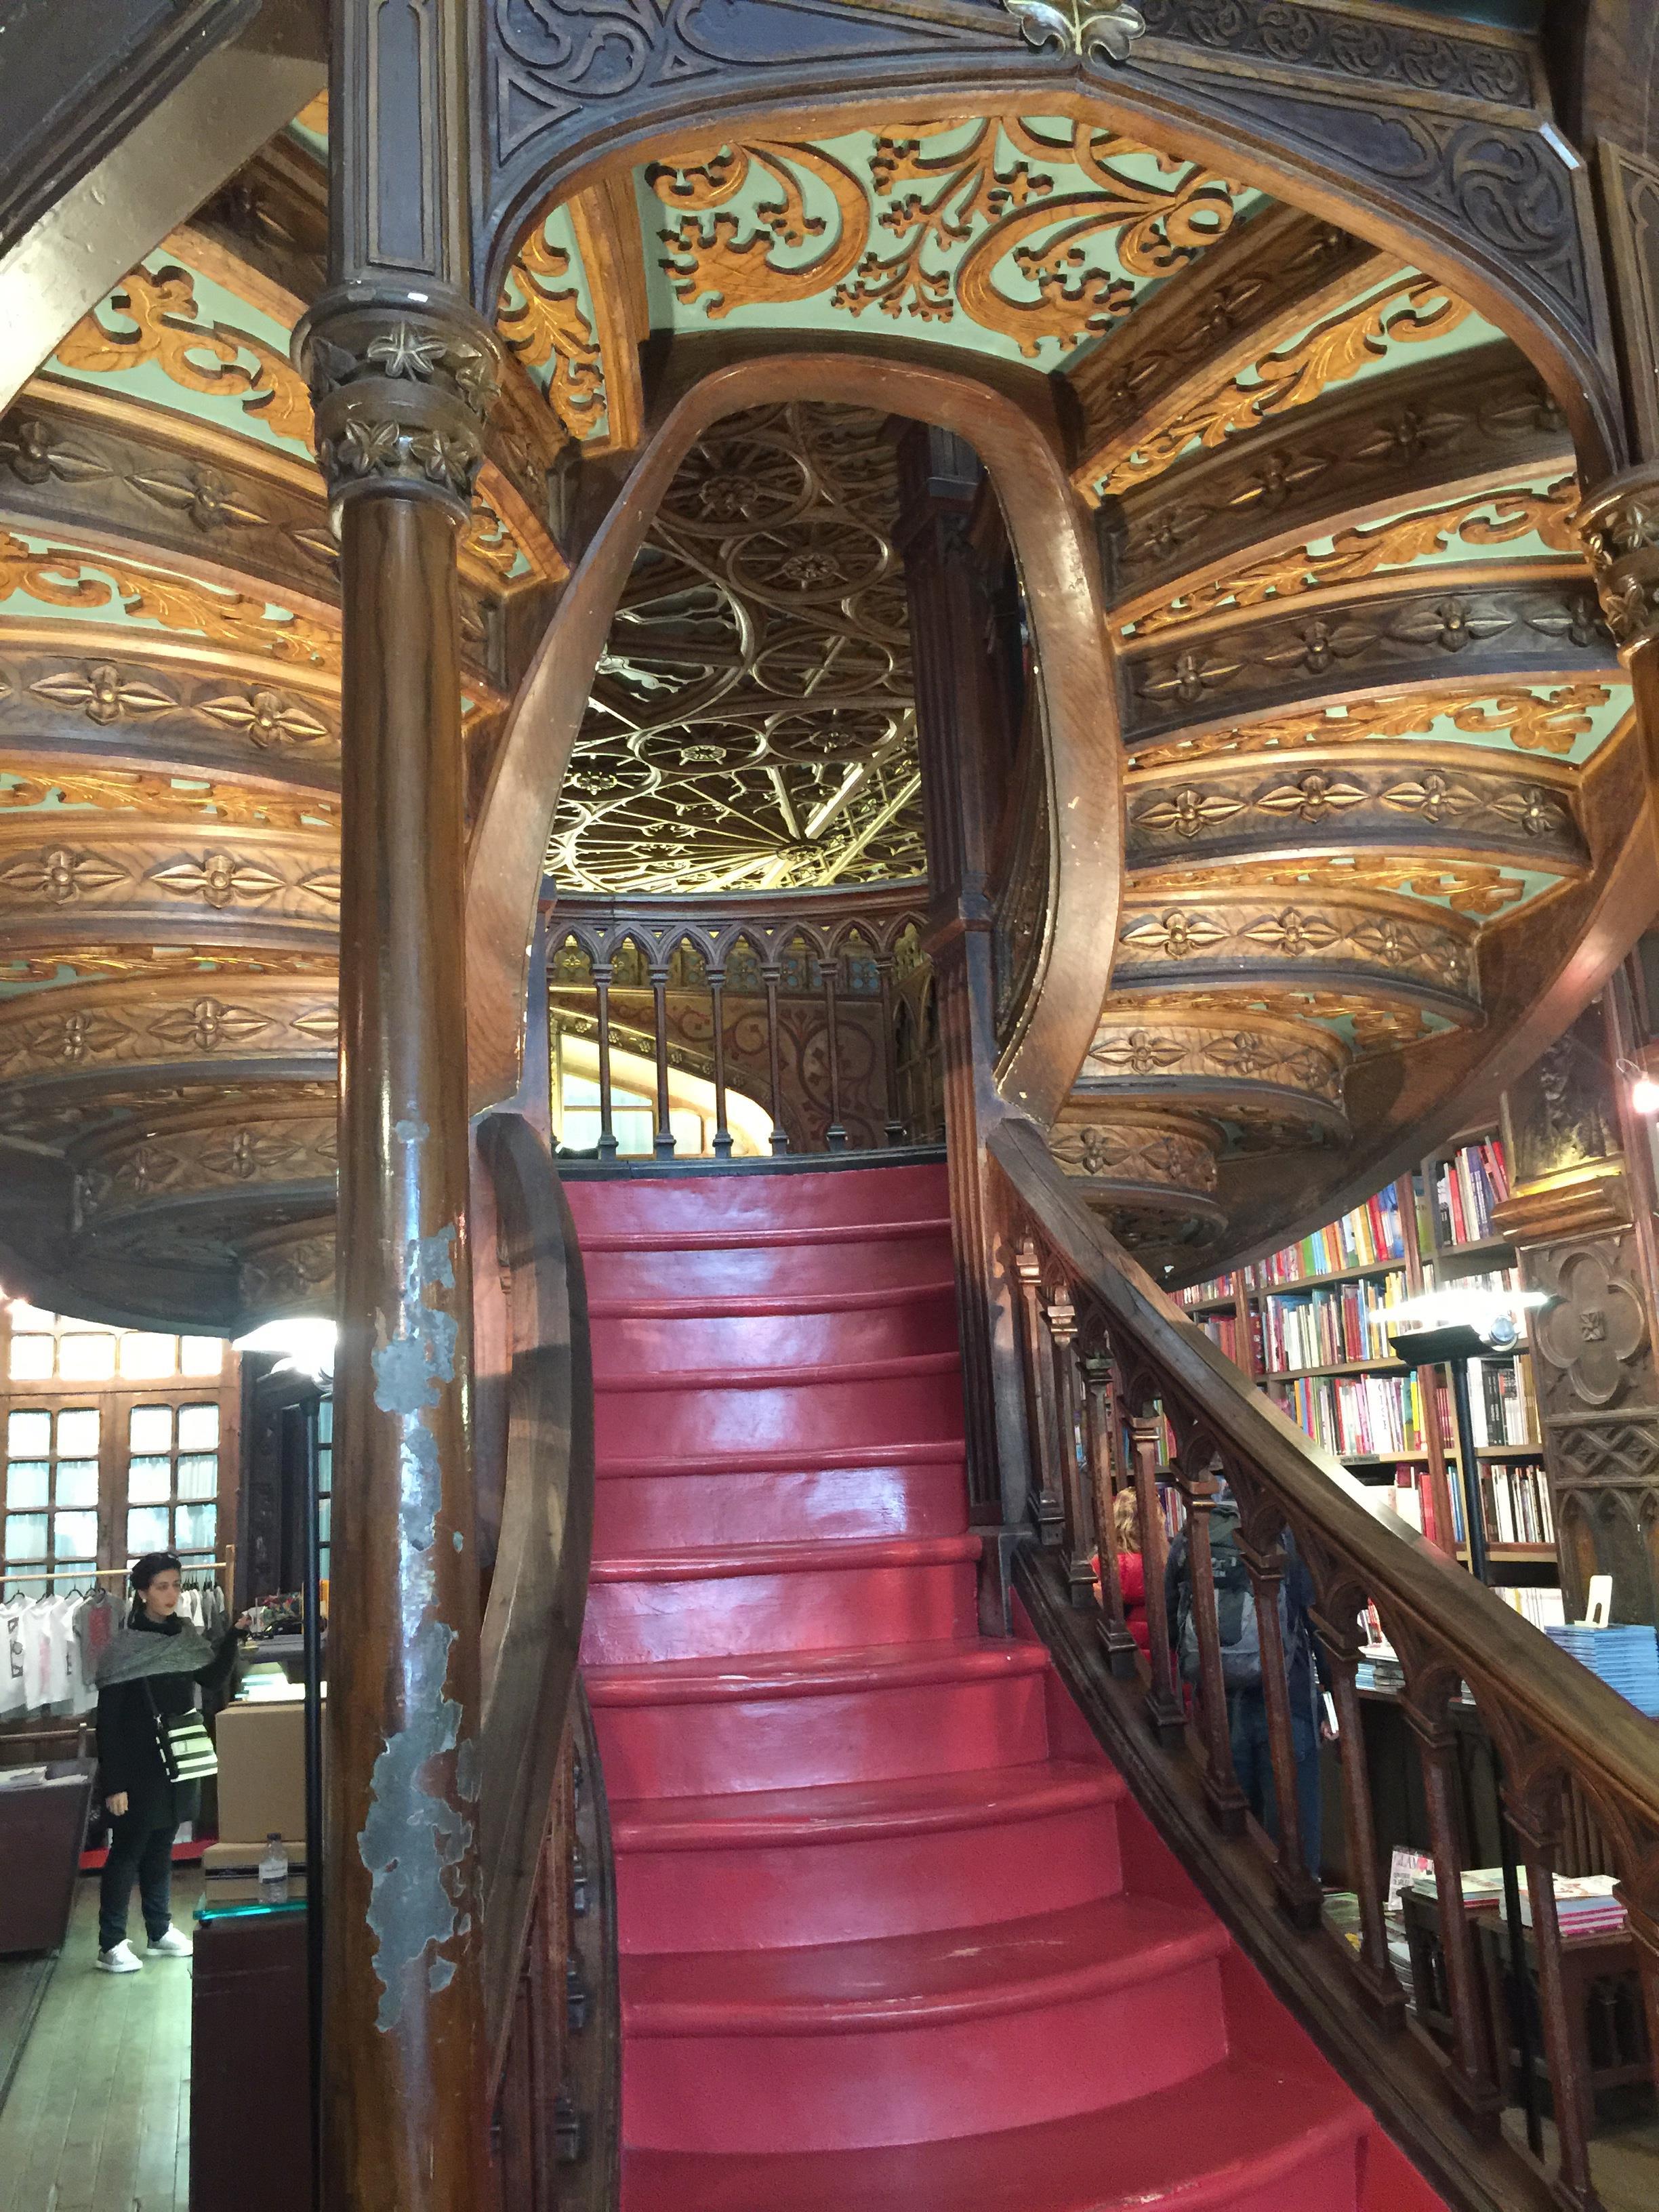 【携程攻略】波尔图莱罗书店景点,世界十大最美书店之一莱罗书店是